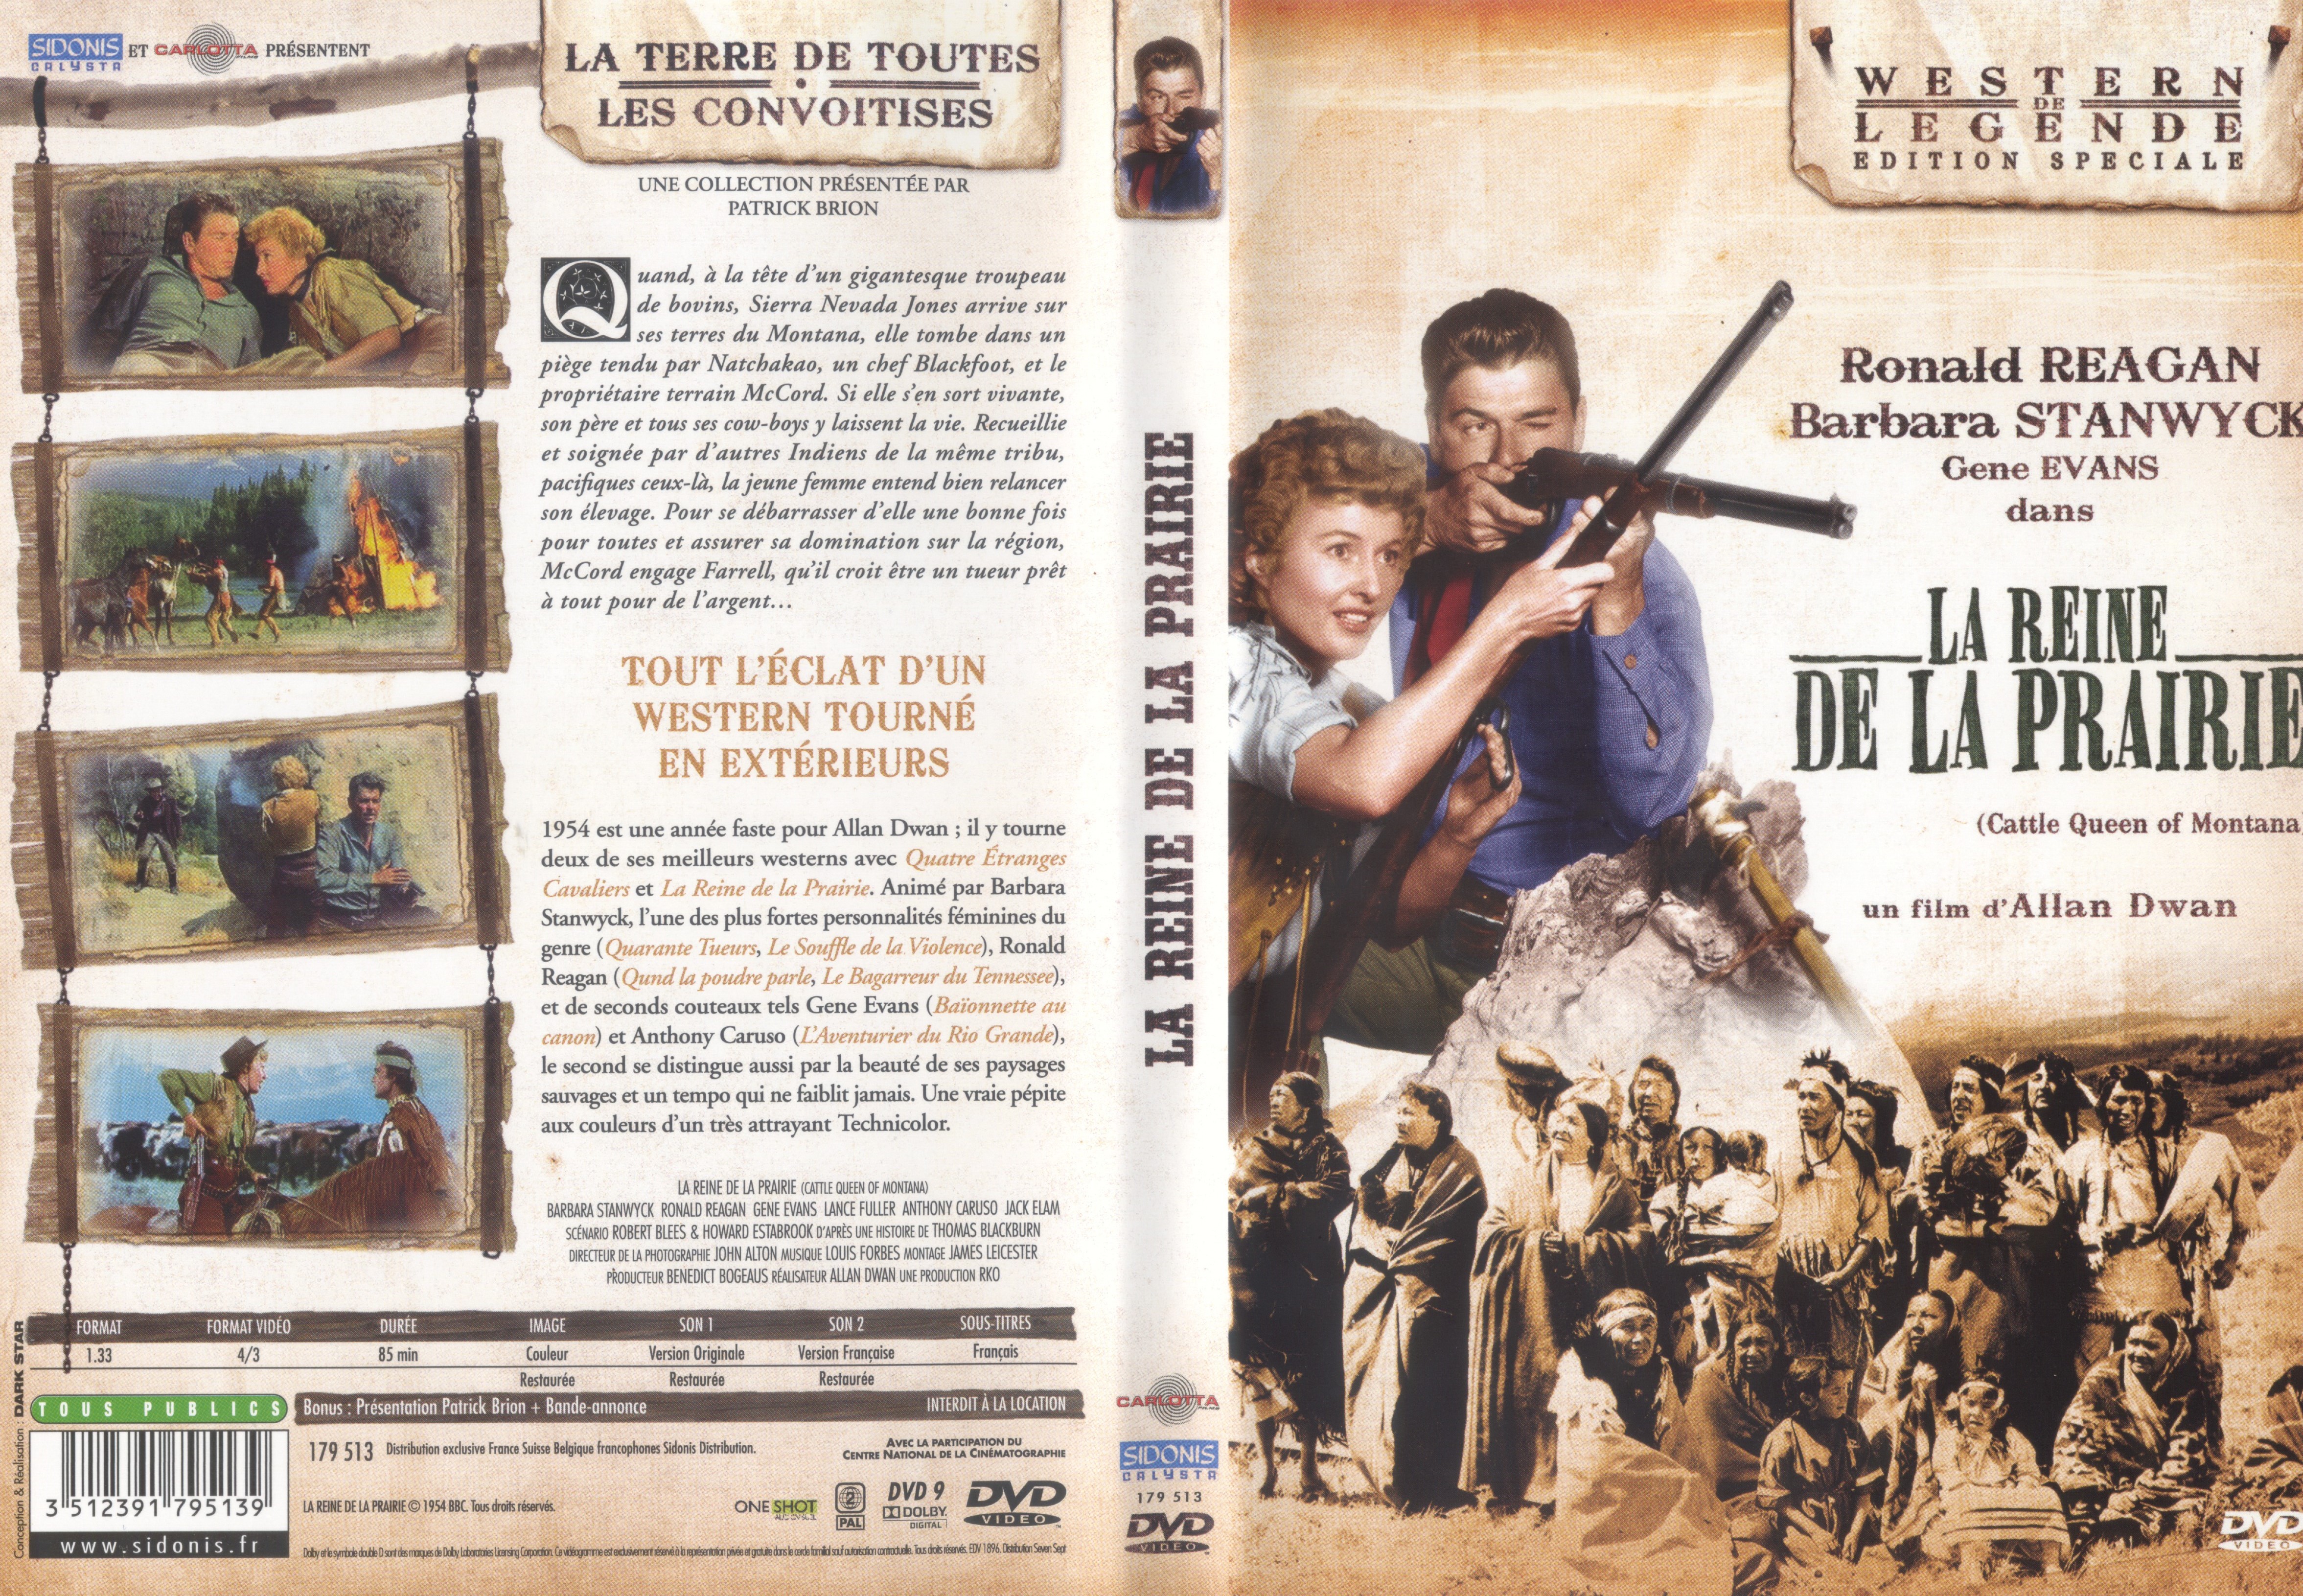 Jaquette DVD La reine de la prairie